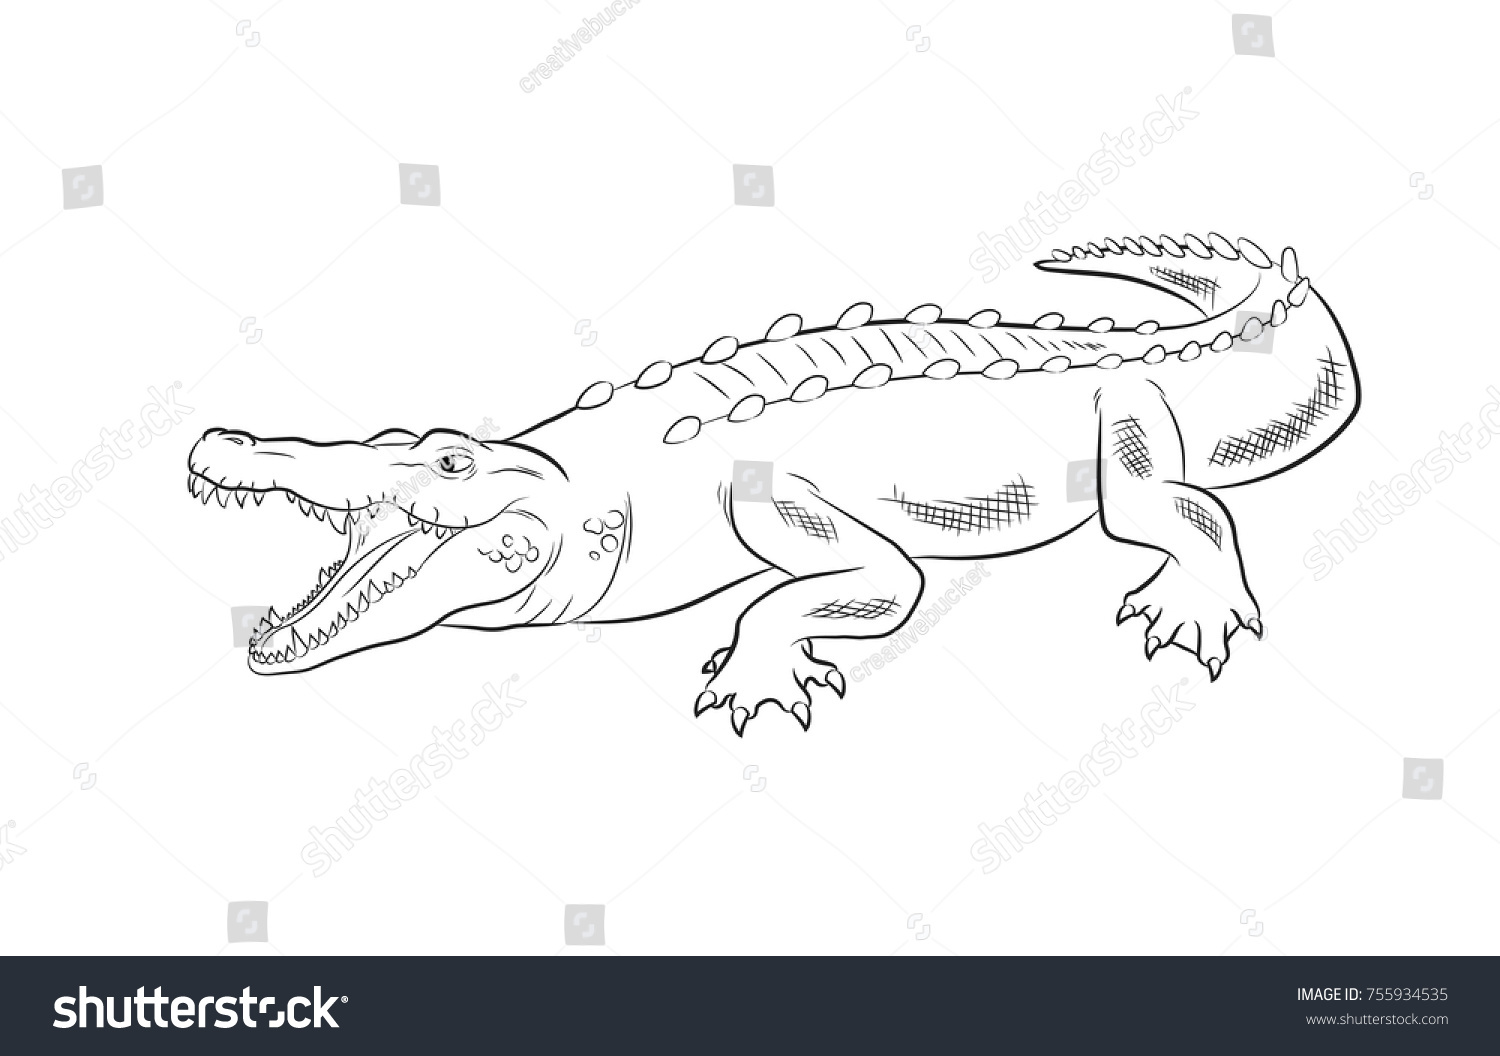 Крокодил схематически